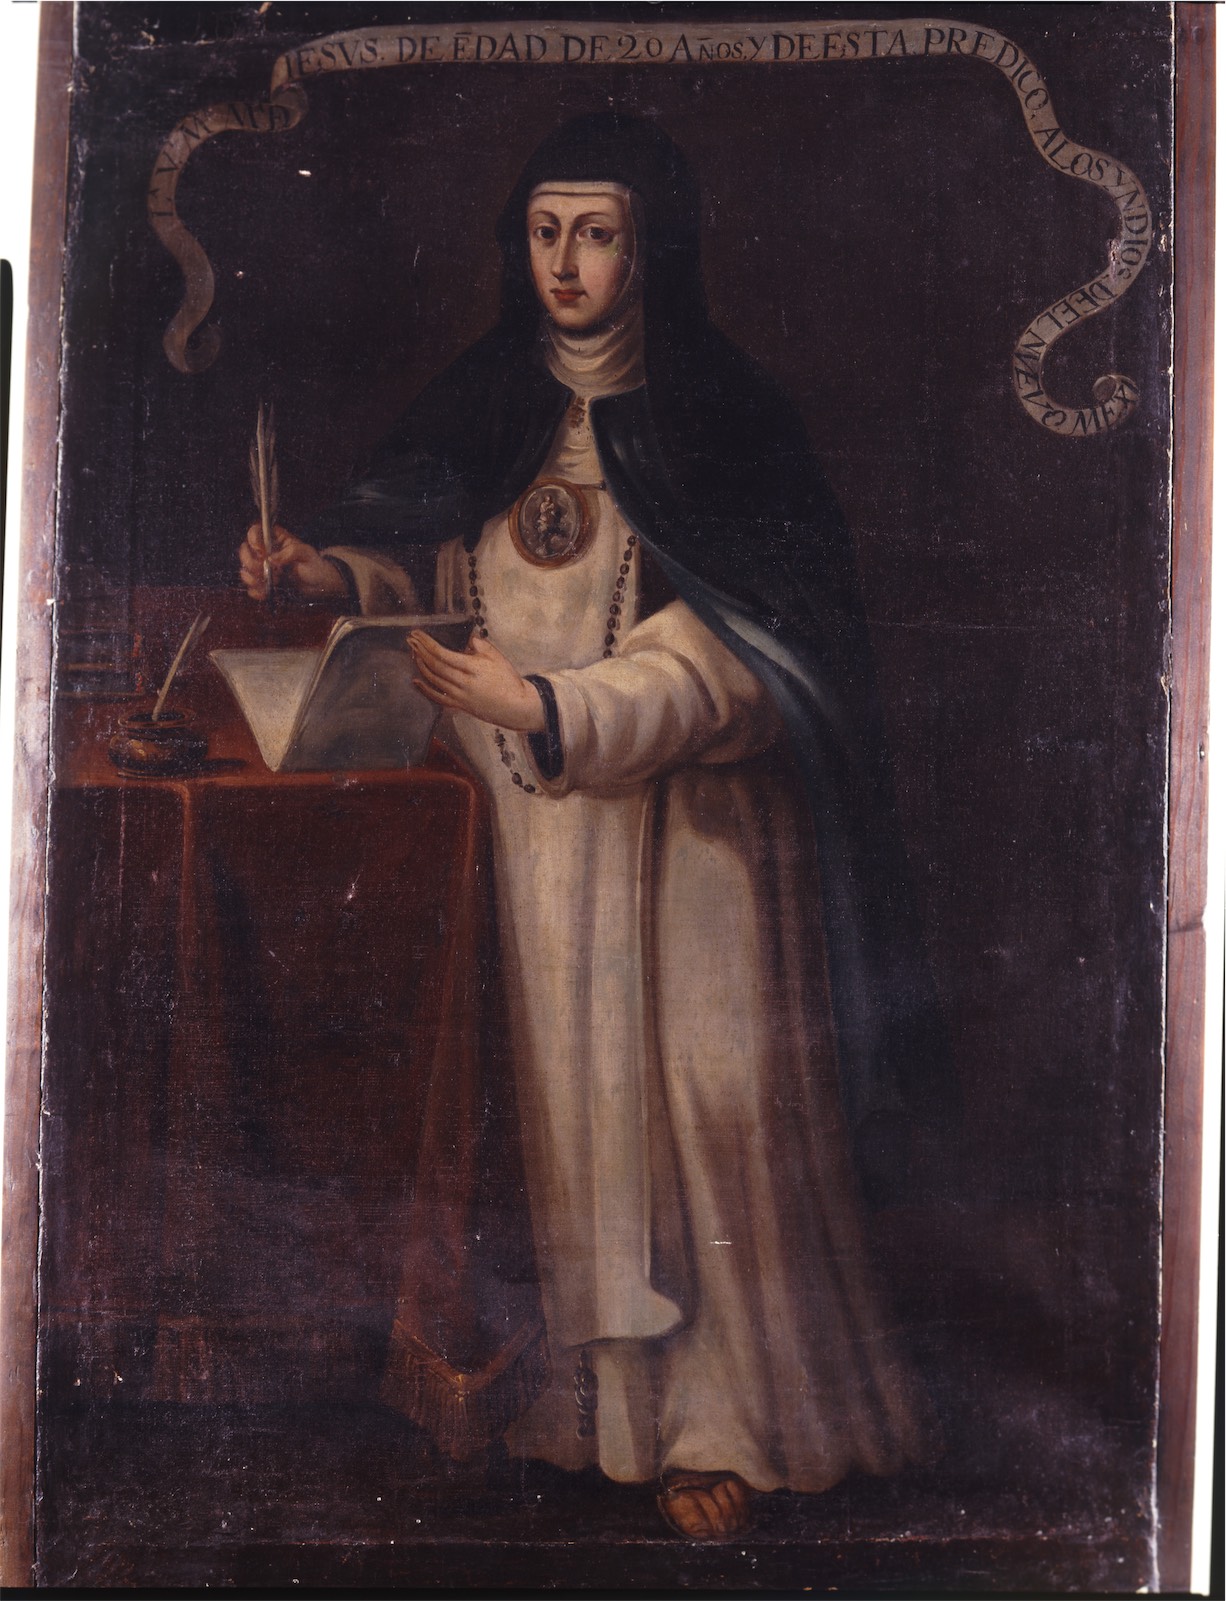 Venerable madre María de Jesús de Ágreda